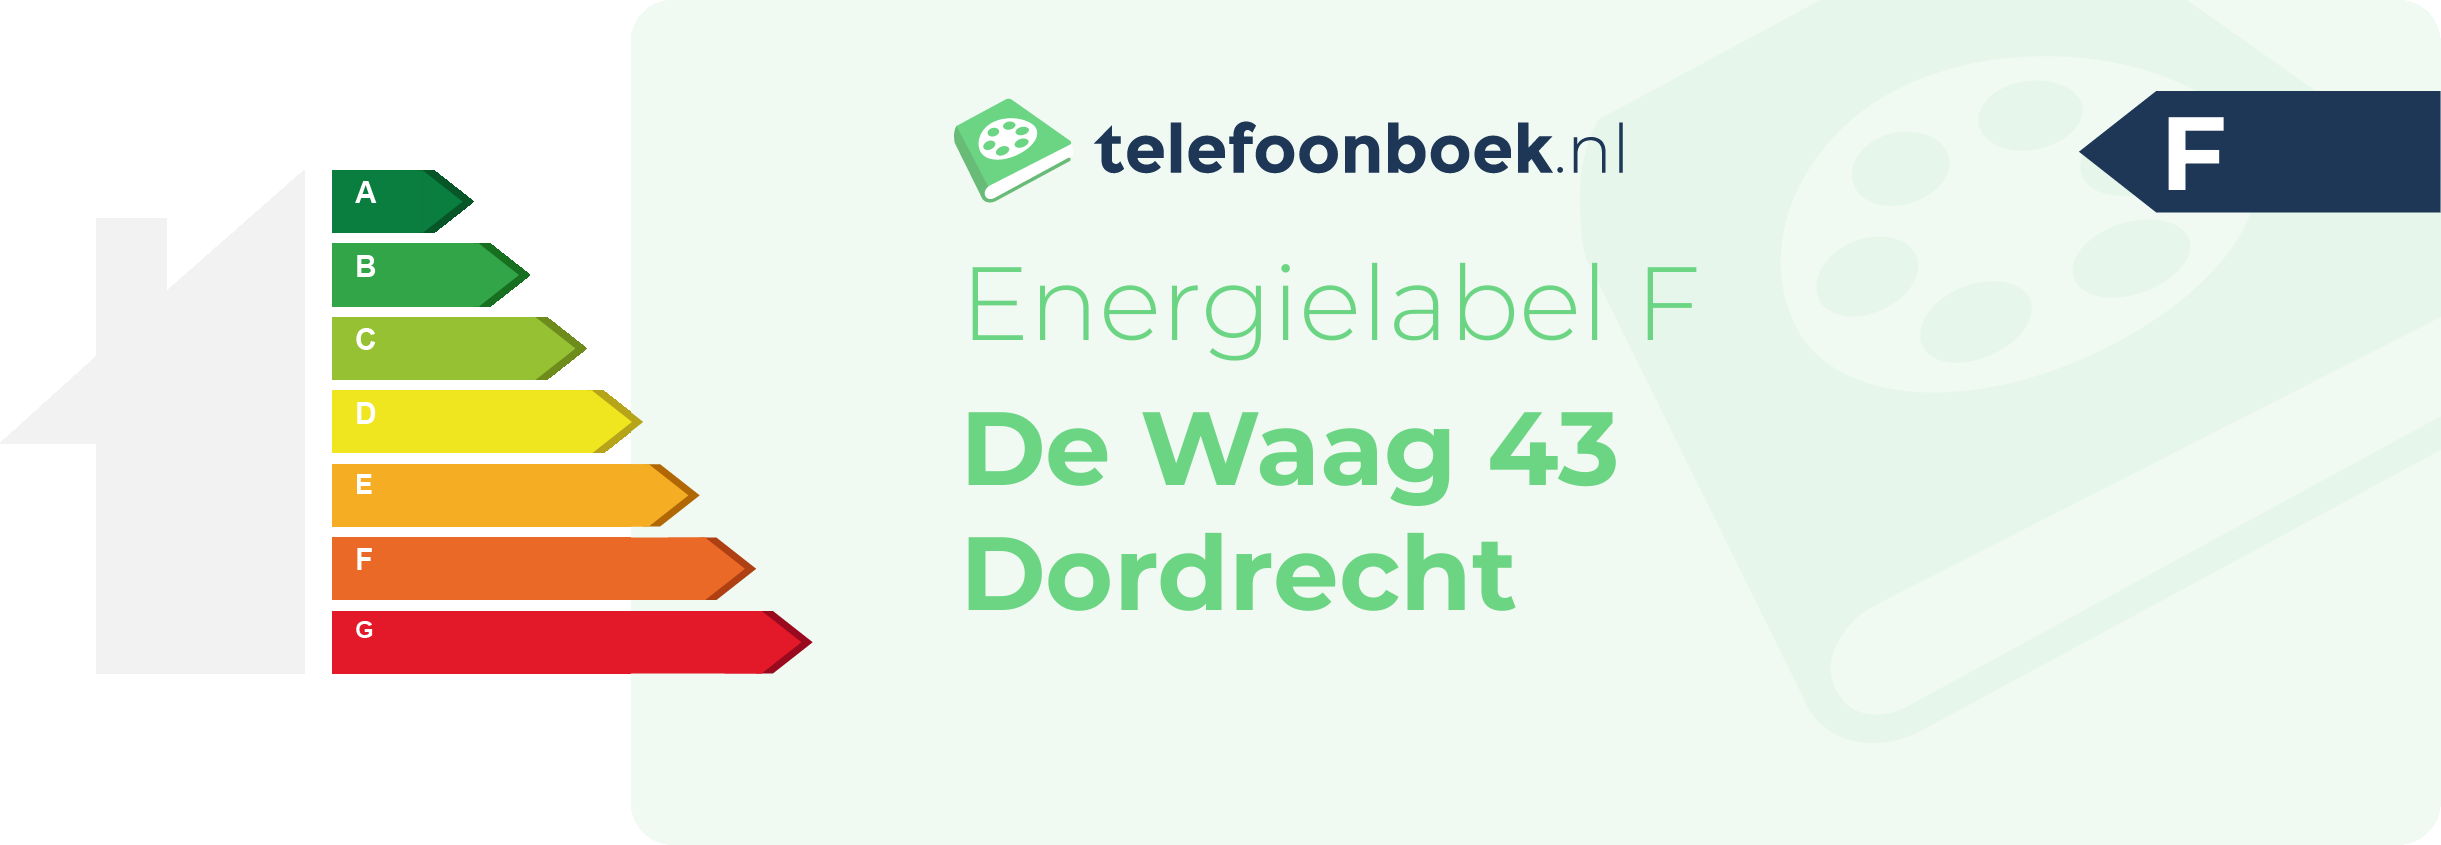 Energielabel De Waag 43 Dordrecht